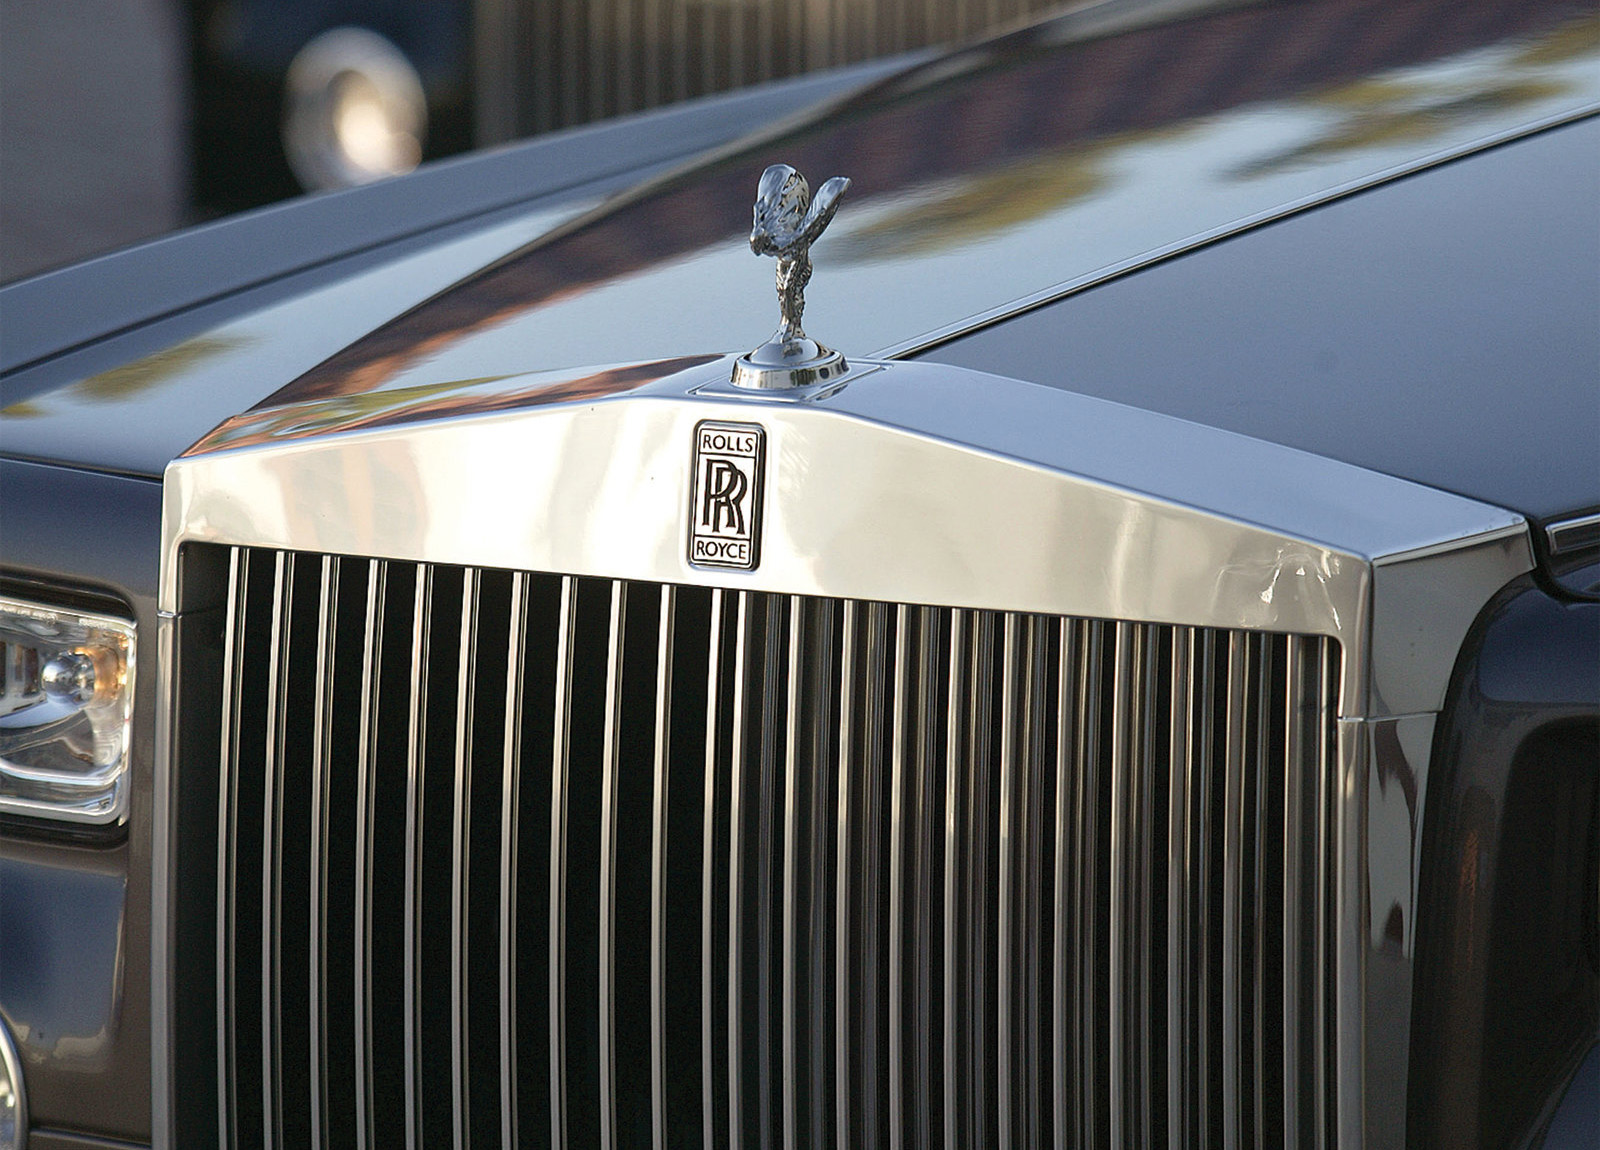 Найками роллс. Rolls Royce 2003. Rolls Royce Phantom. Роллс Ройс Фантом 2003 года. Зонтик Роллс Ройс.